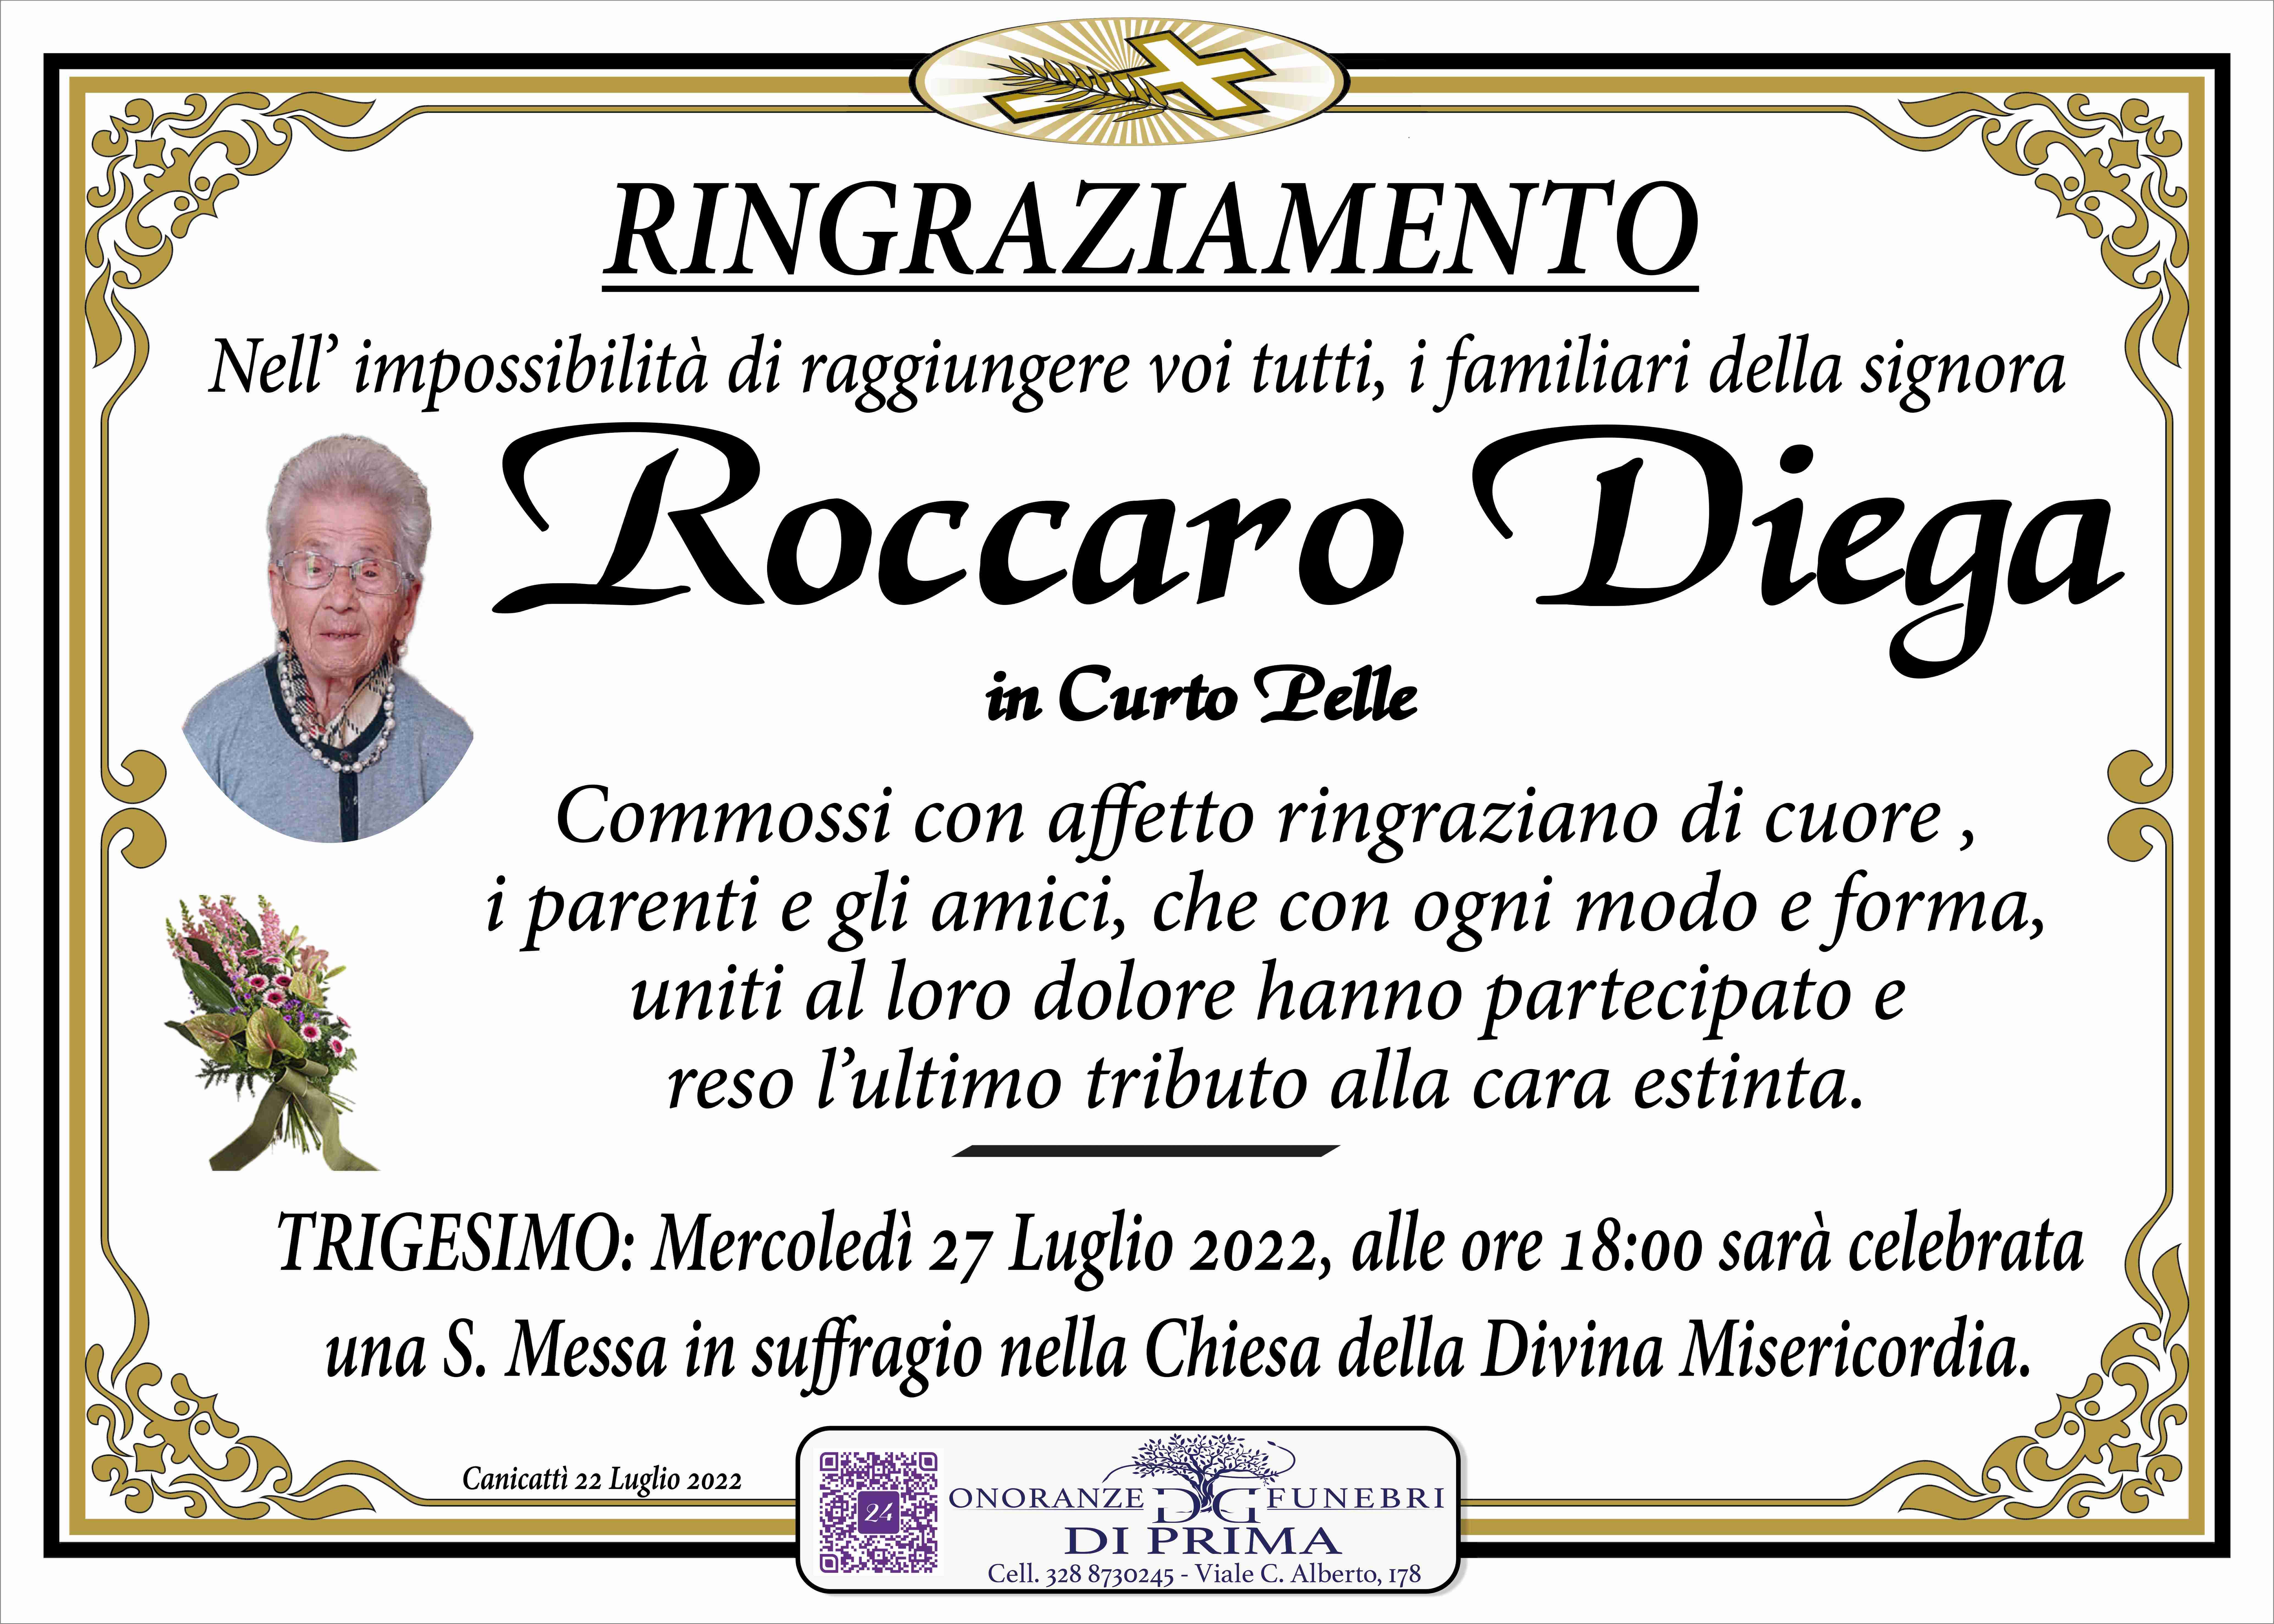 Diega Roccaro